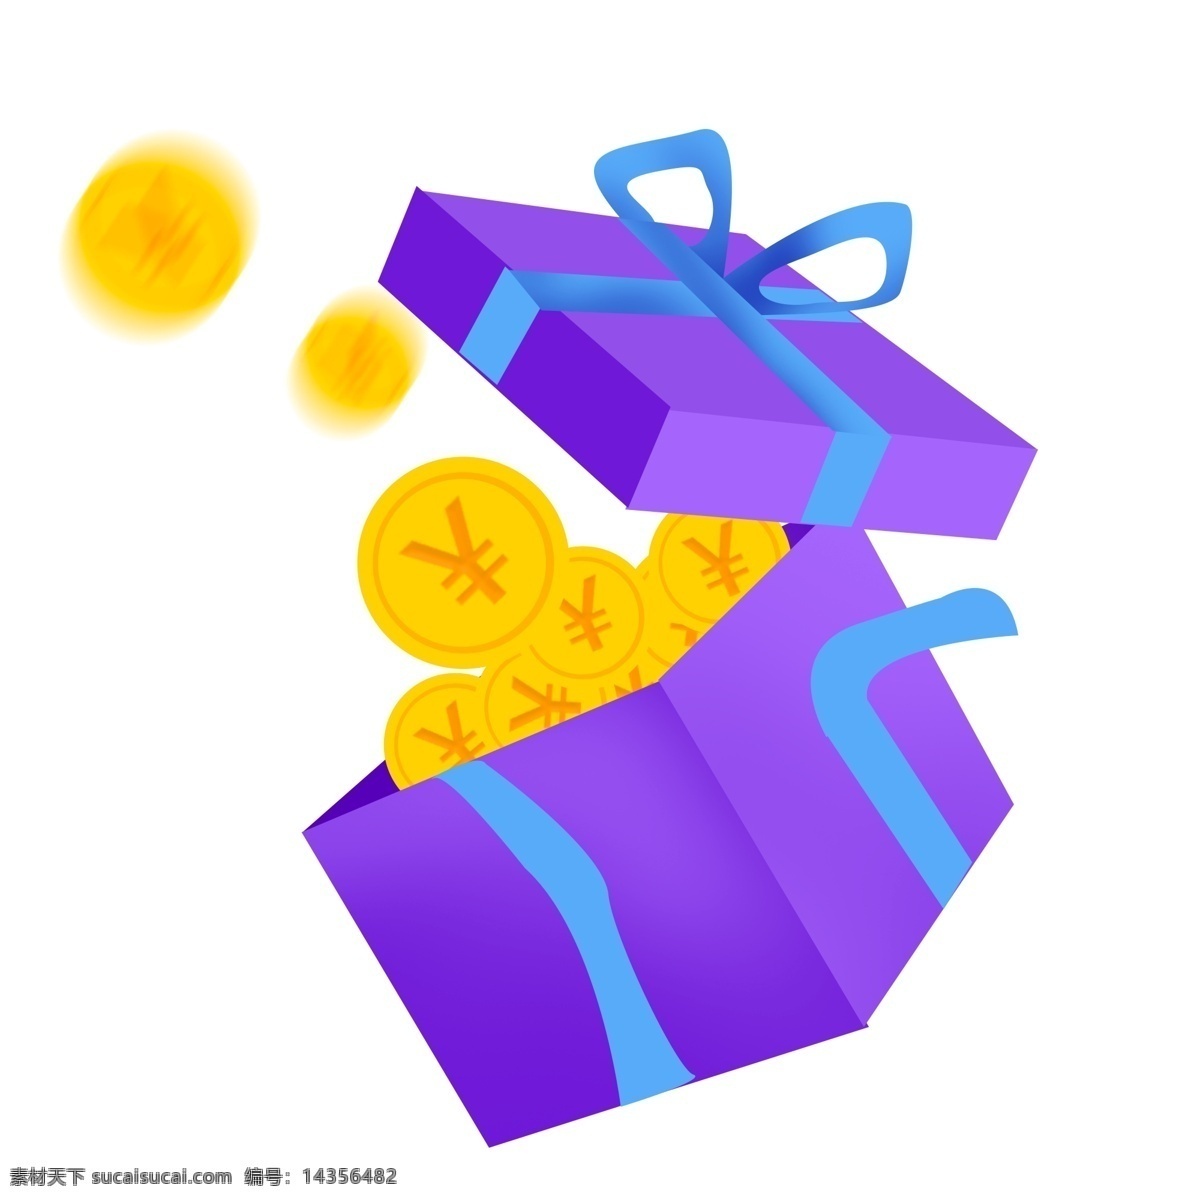 紫色 礼盒 礼物 插画 蓝色的蝴蝶结 蝴蝶结装饰 黄色的铜币 漂亮 浪漫礼盒礼物 礼盒礼物装饰